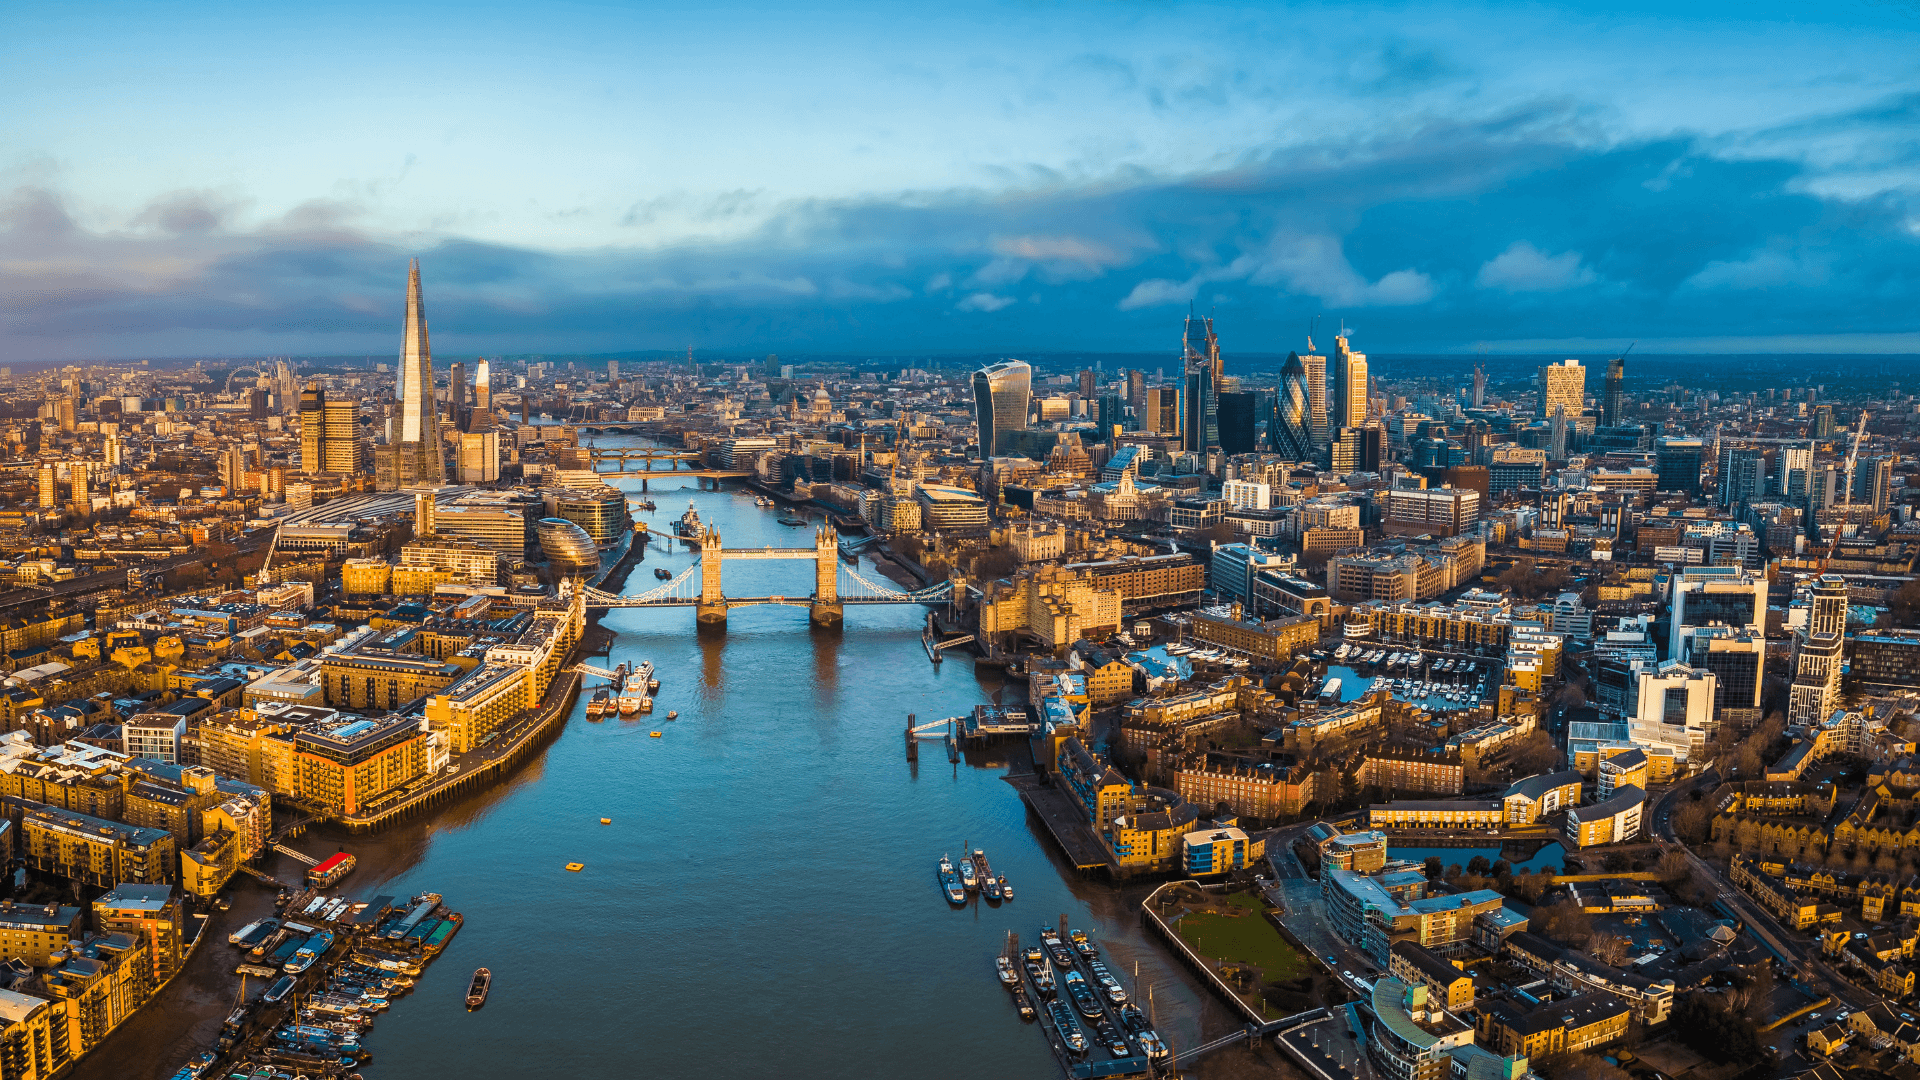 London skyline including River Thames